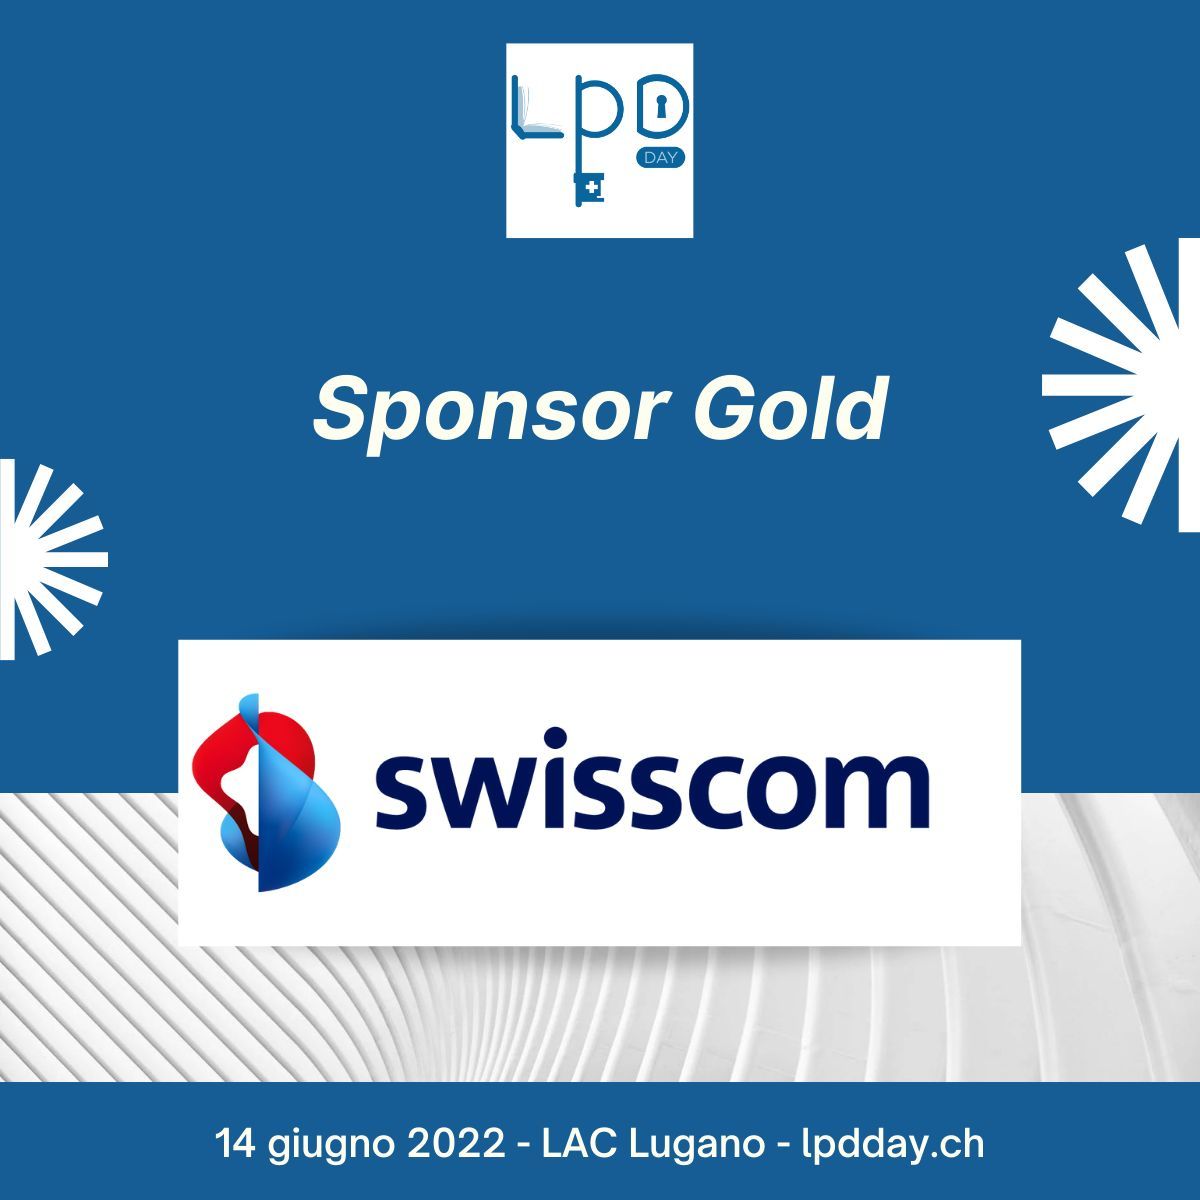 Swisscom компаниясынын биринчи LPD күнүнүн "Алтын демөөрчүсү" катары жарыялоо